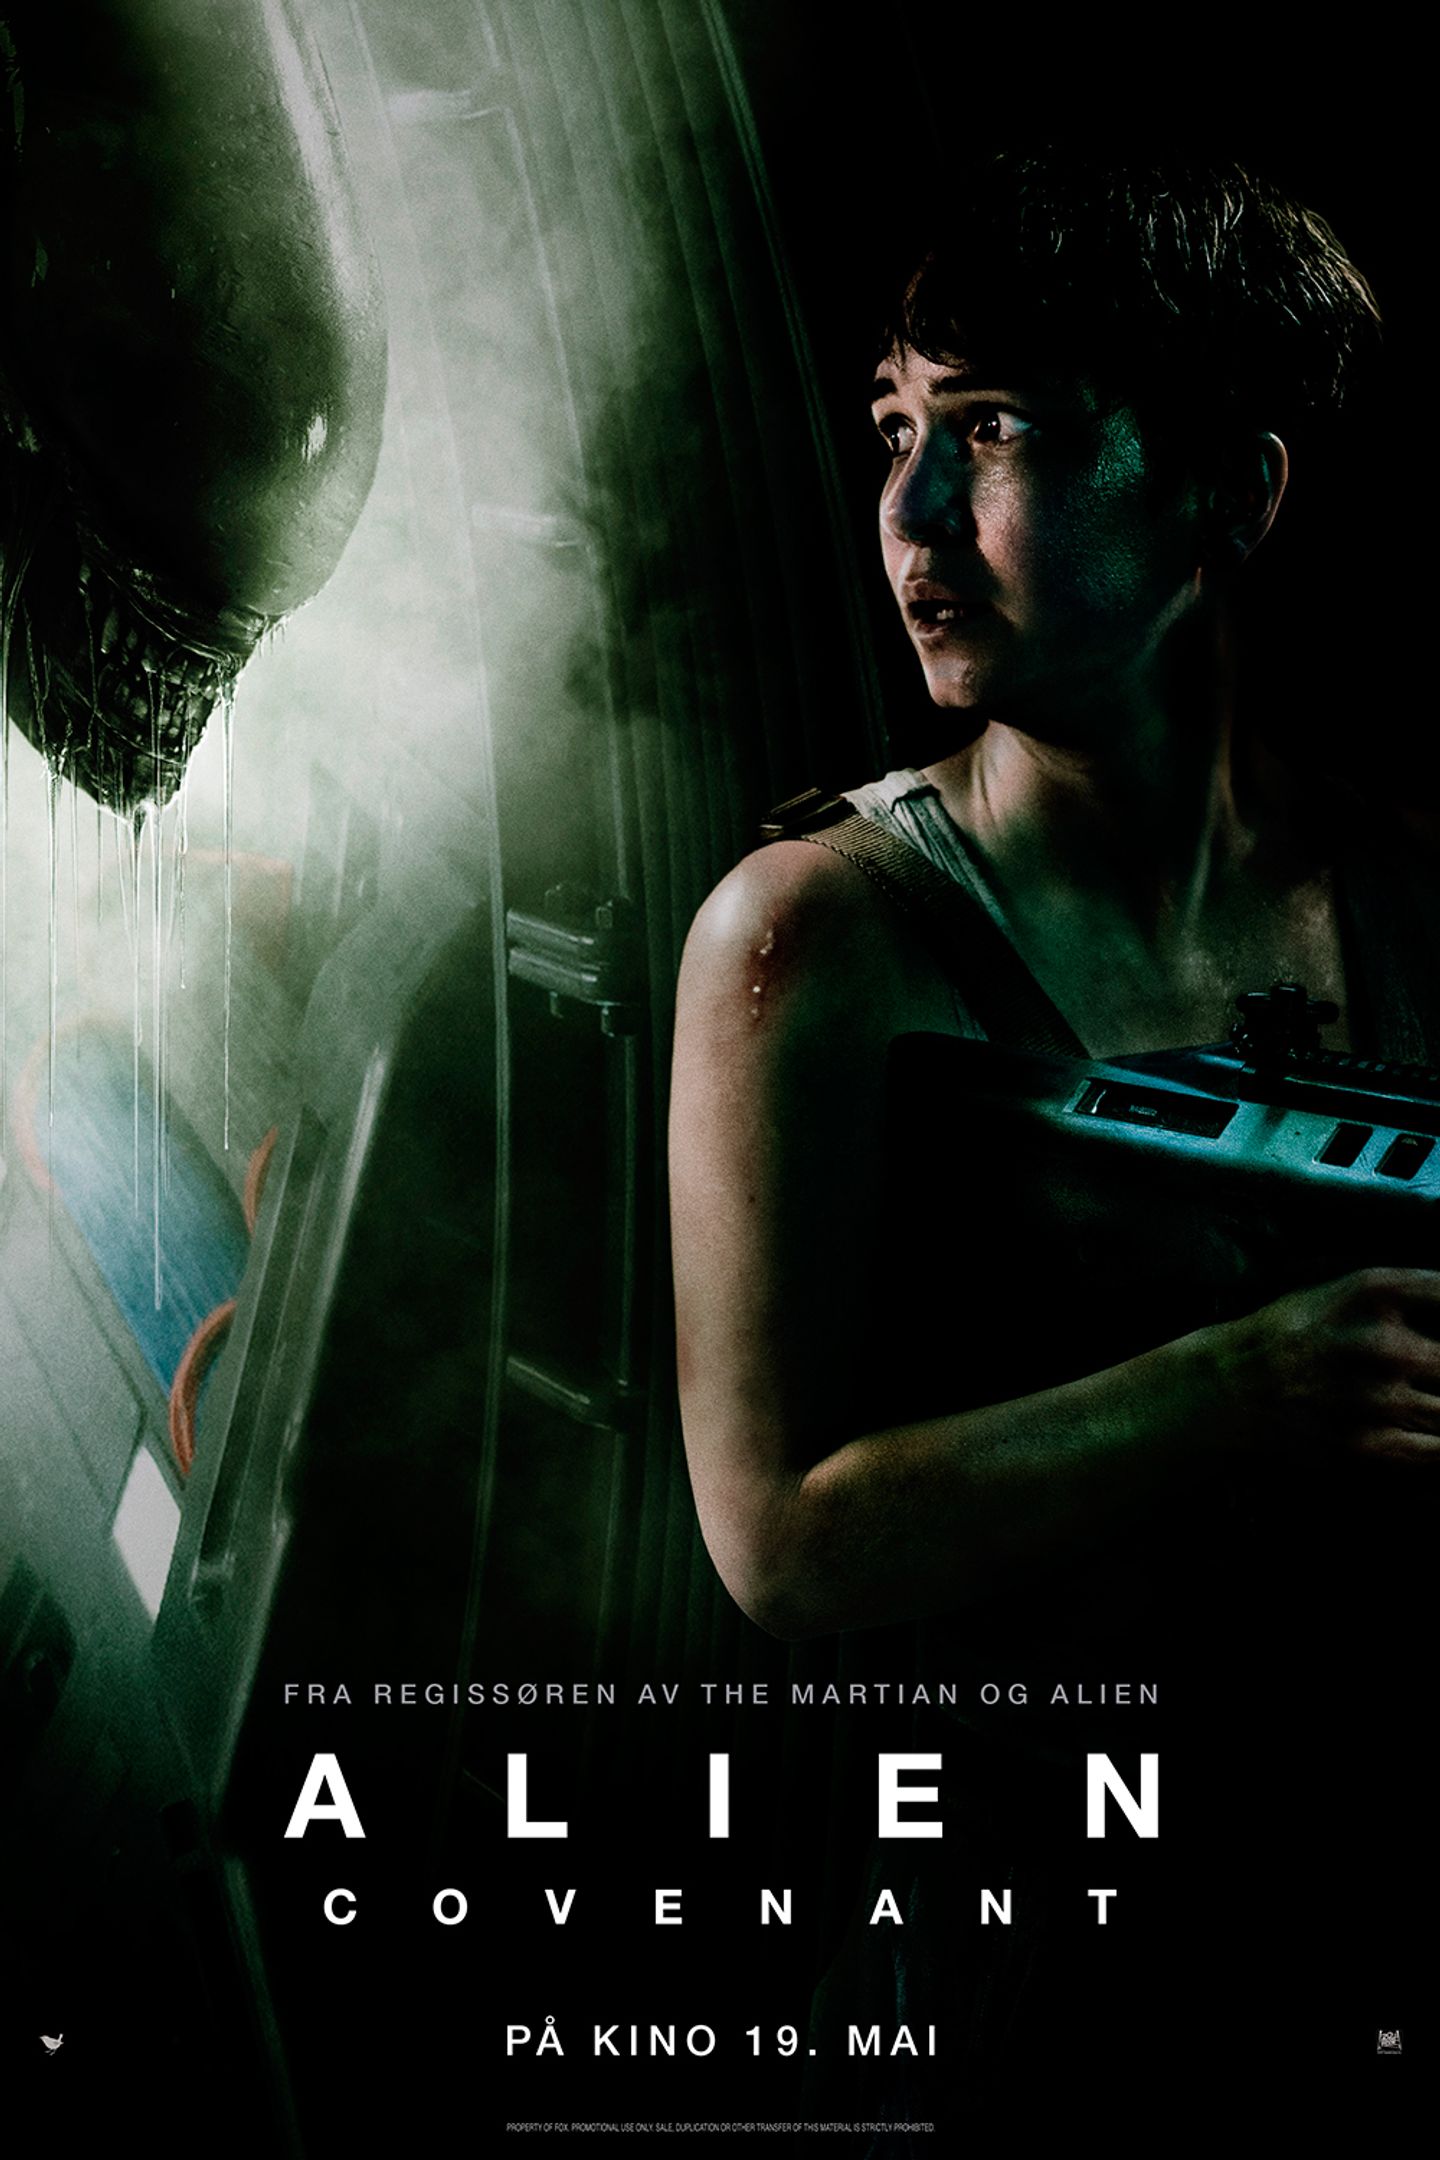 Plakat for 'Alien: Covenant'